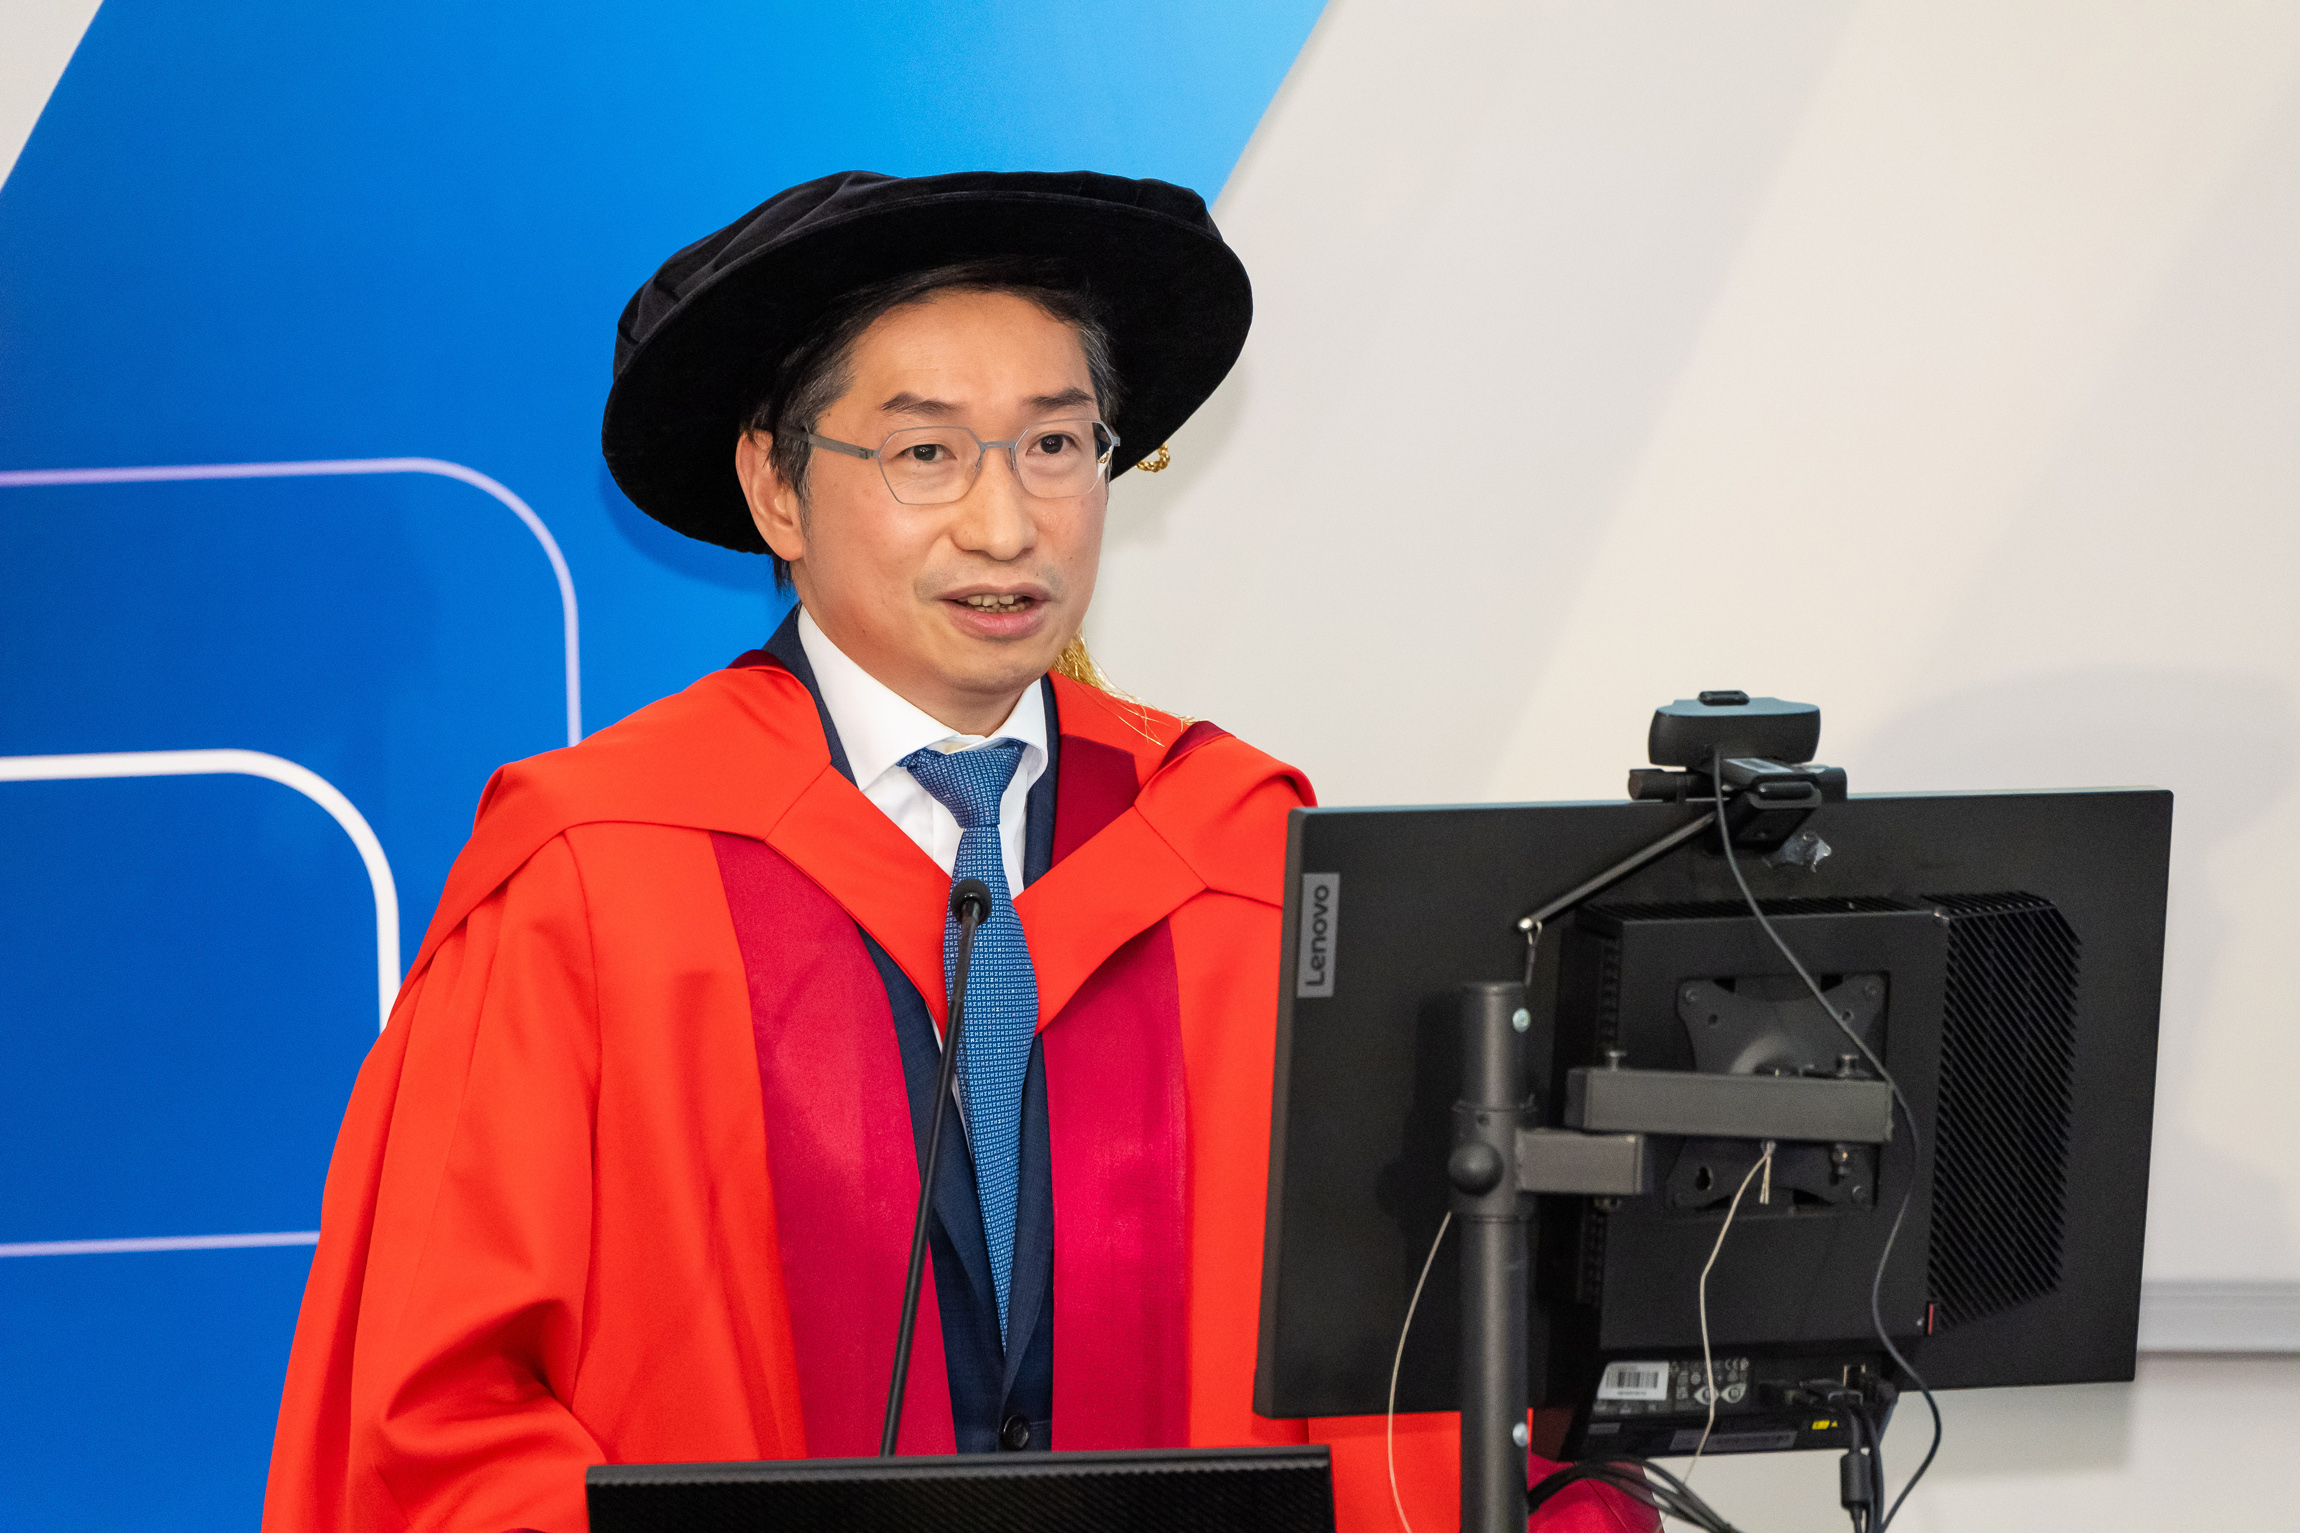 Professor Philip Chiu